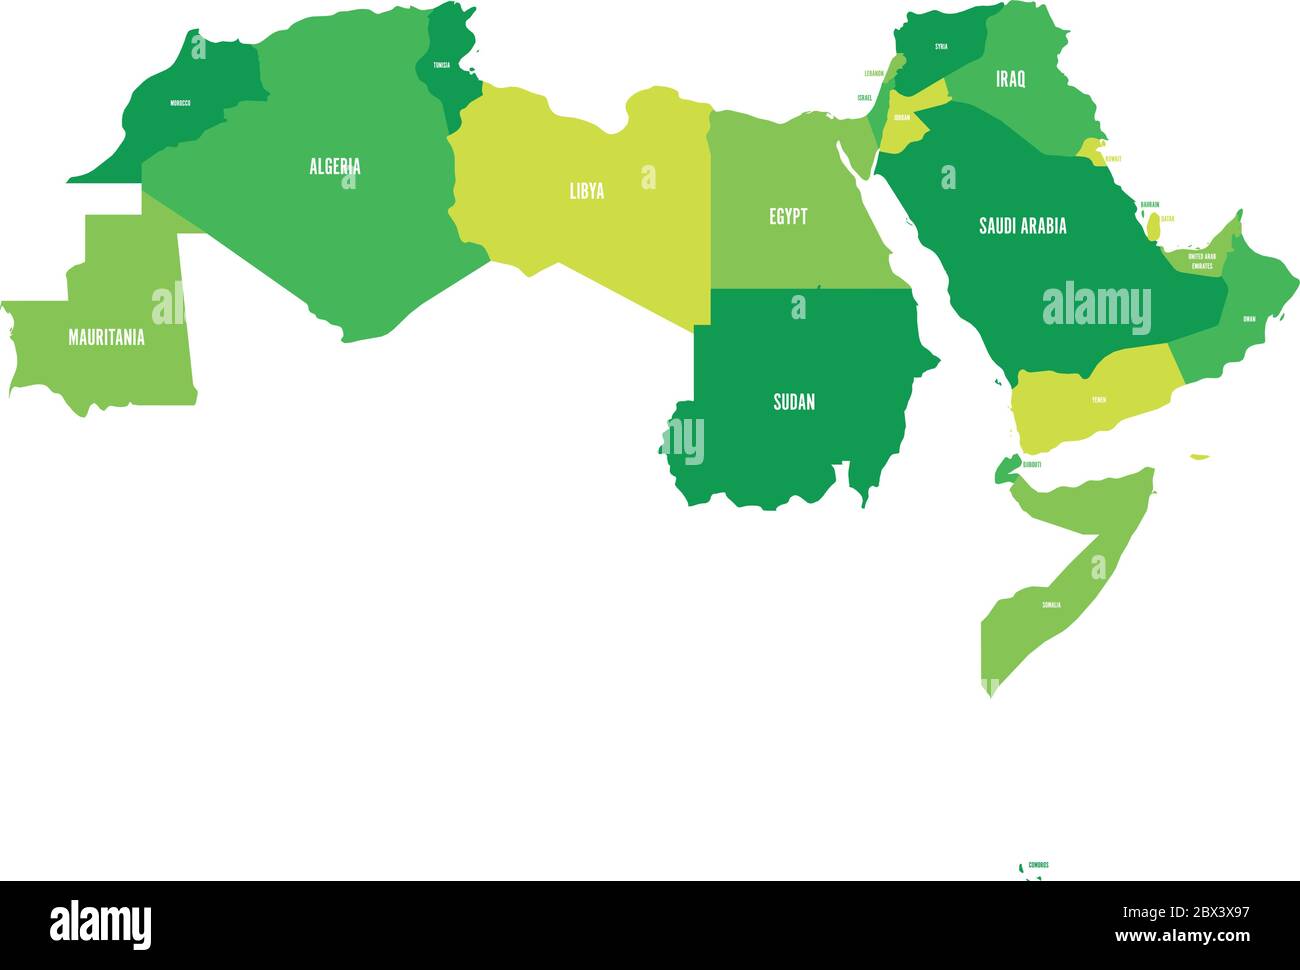 Staaten der arabischen Welt. Politische Karte von 22 arabischsprachigen Ländern der Arabischen Liga. Nordafrika und Naher Osten. Vektorgrafik. Stock Vektor